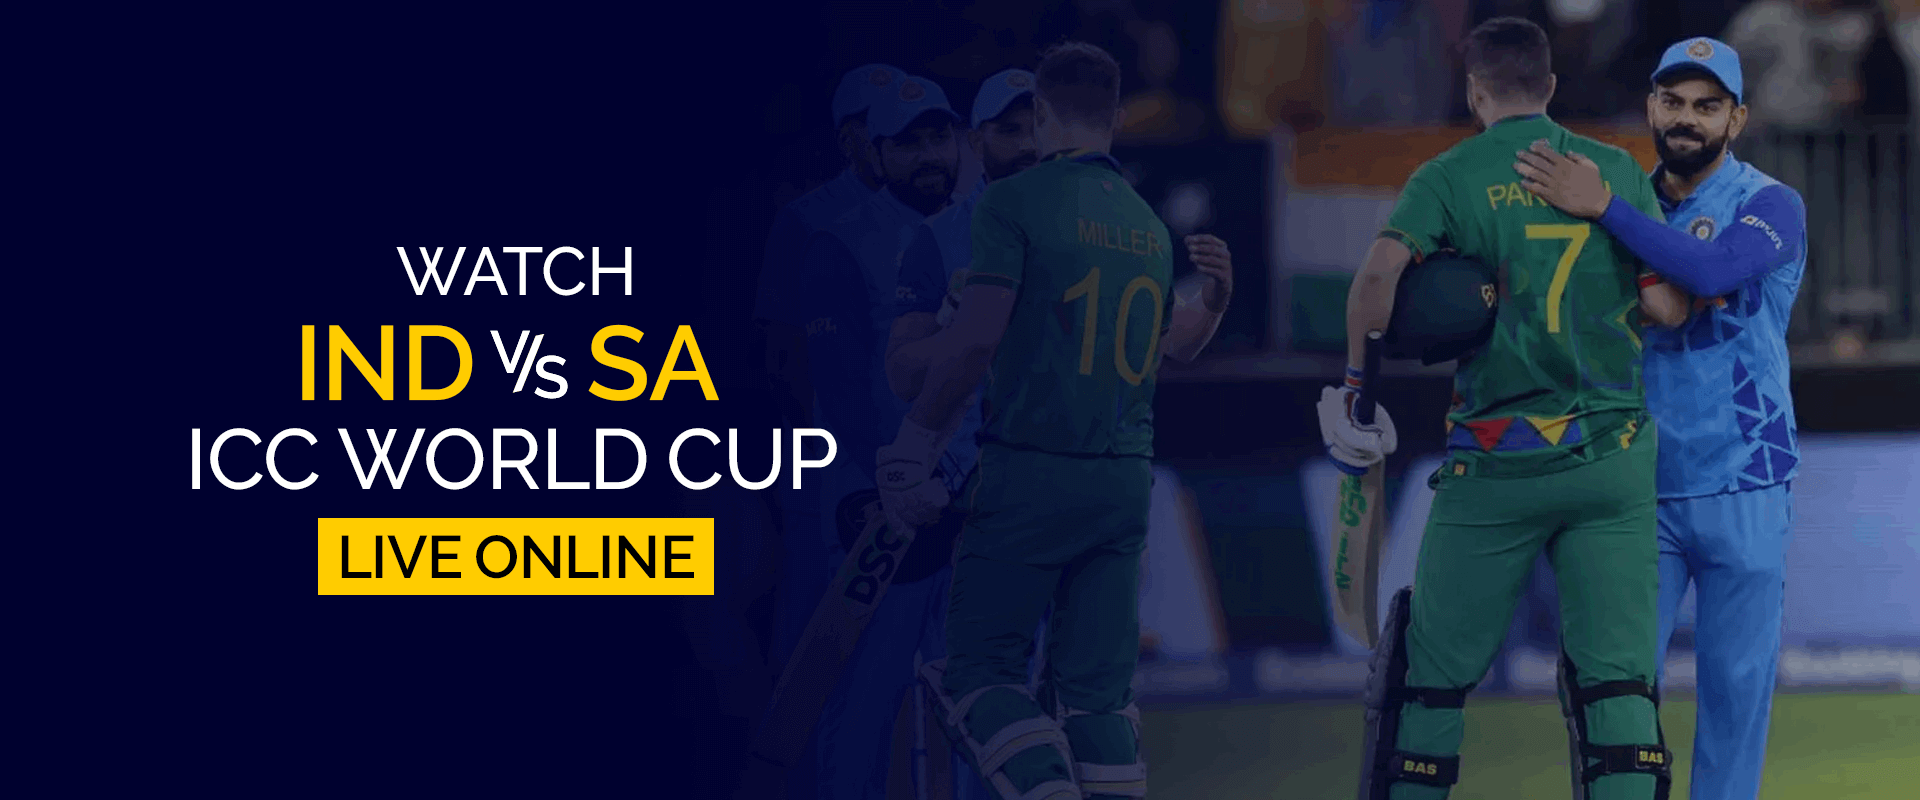 Guarda la Coppa del mondo ICC India-Sudafrica in diretta online